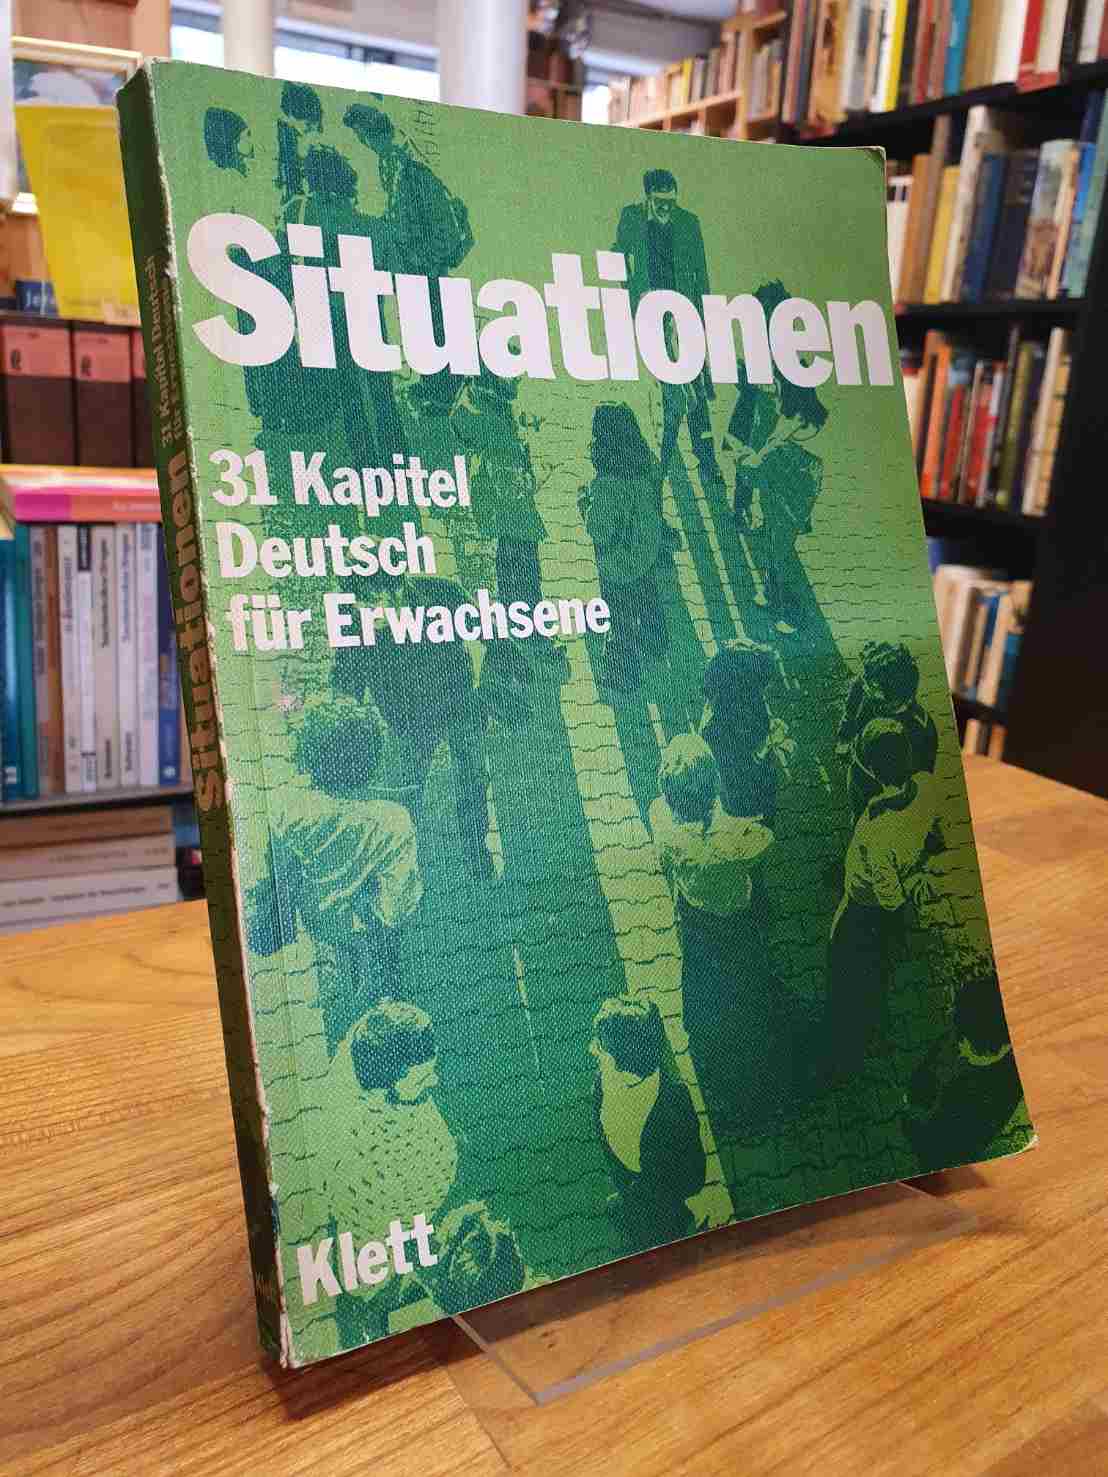 Klett, 31 Kapitel Deutsch für Erwachsene – Situationen –